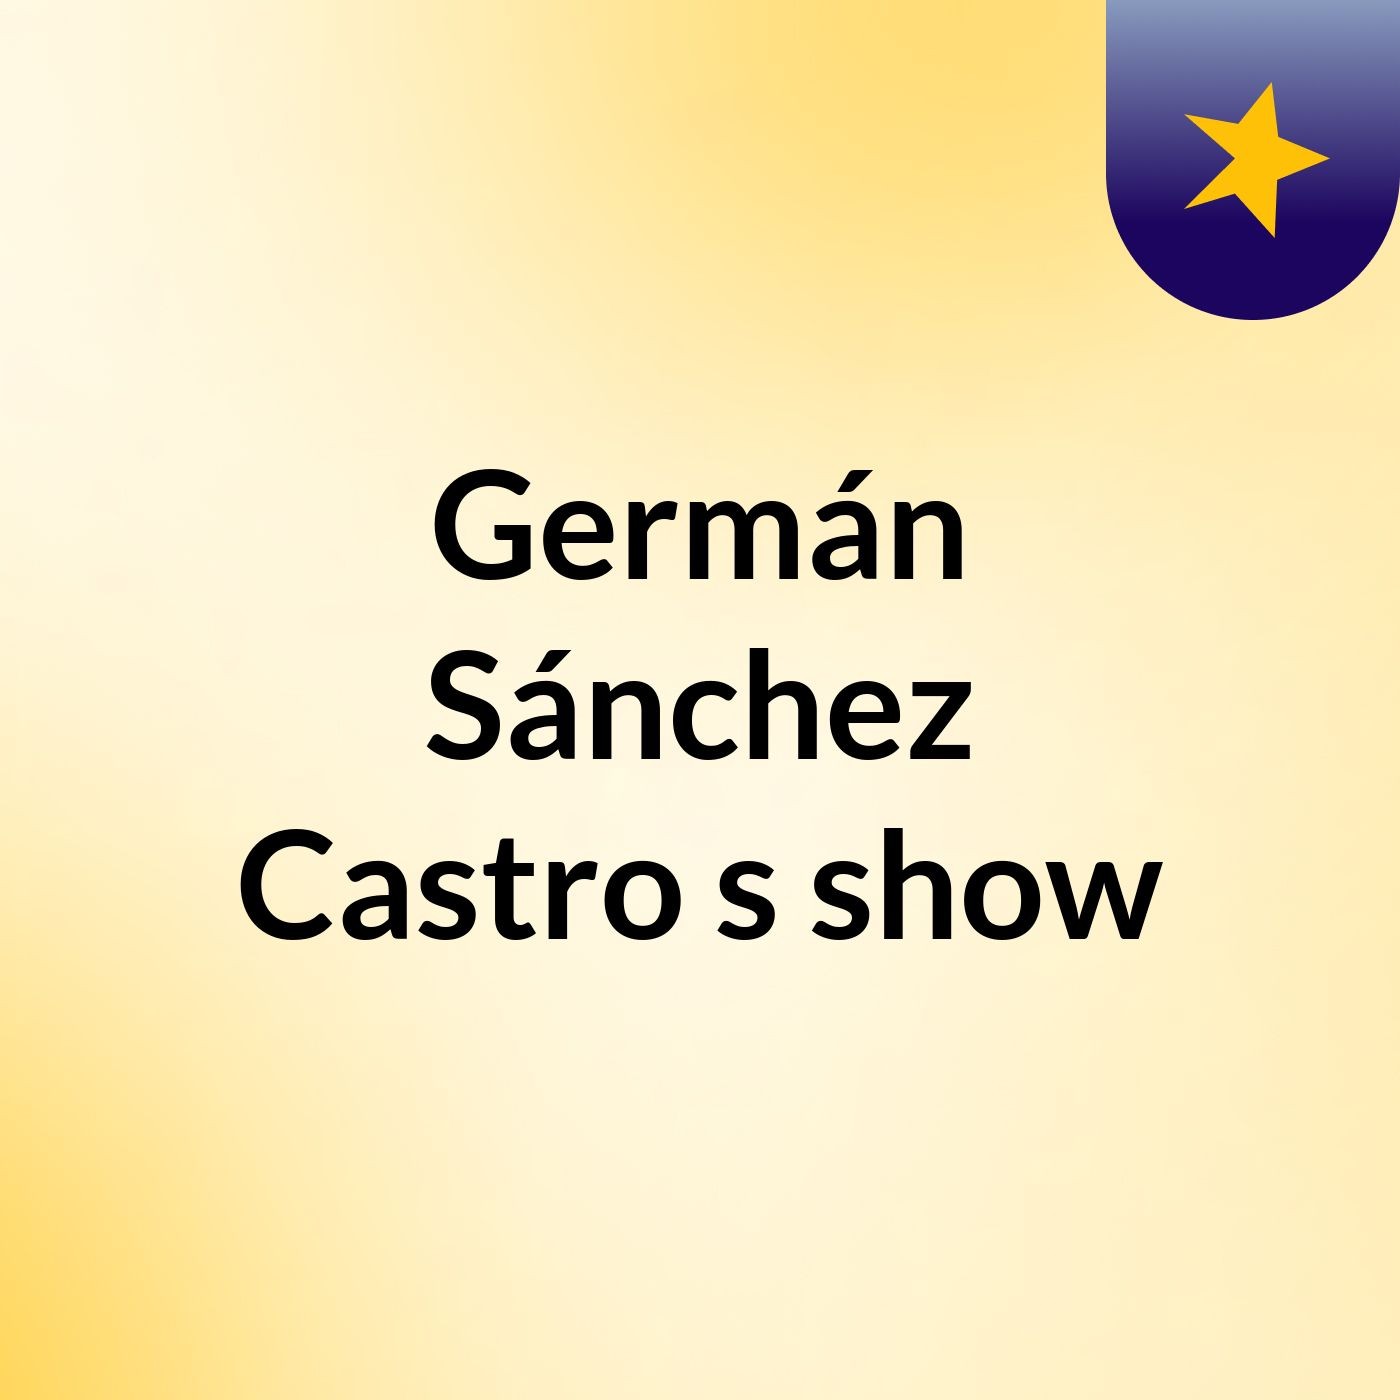 Germán Sánchez Castro's show